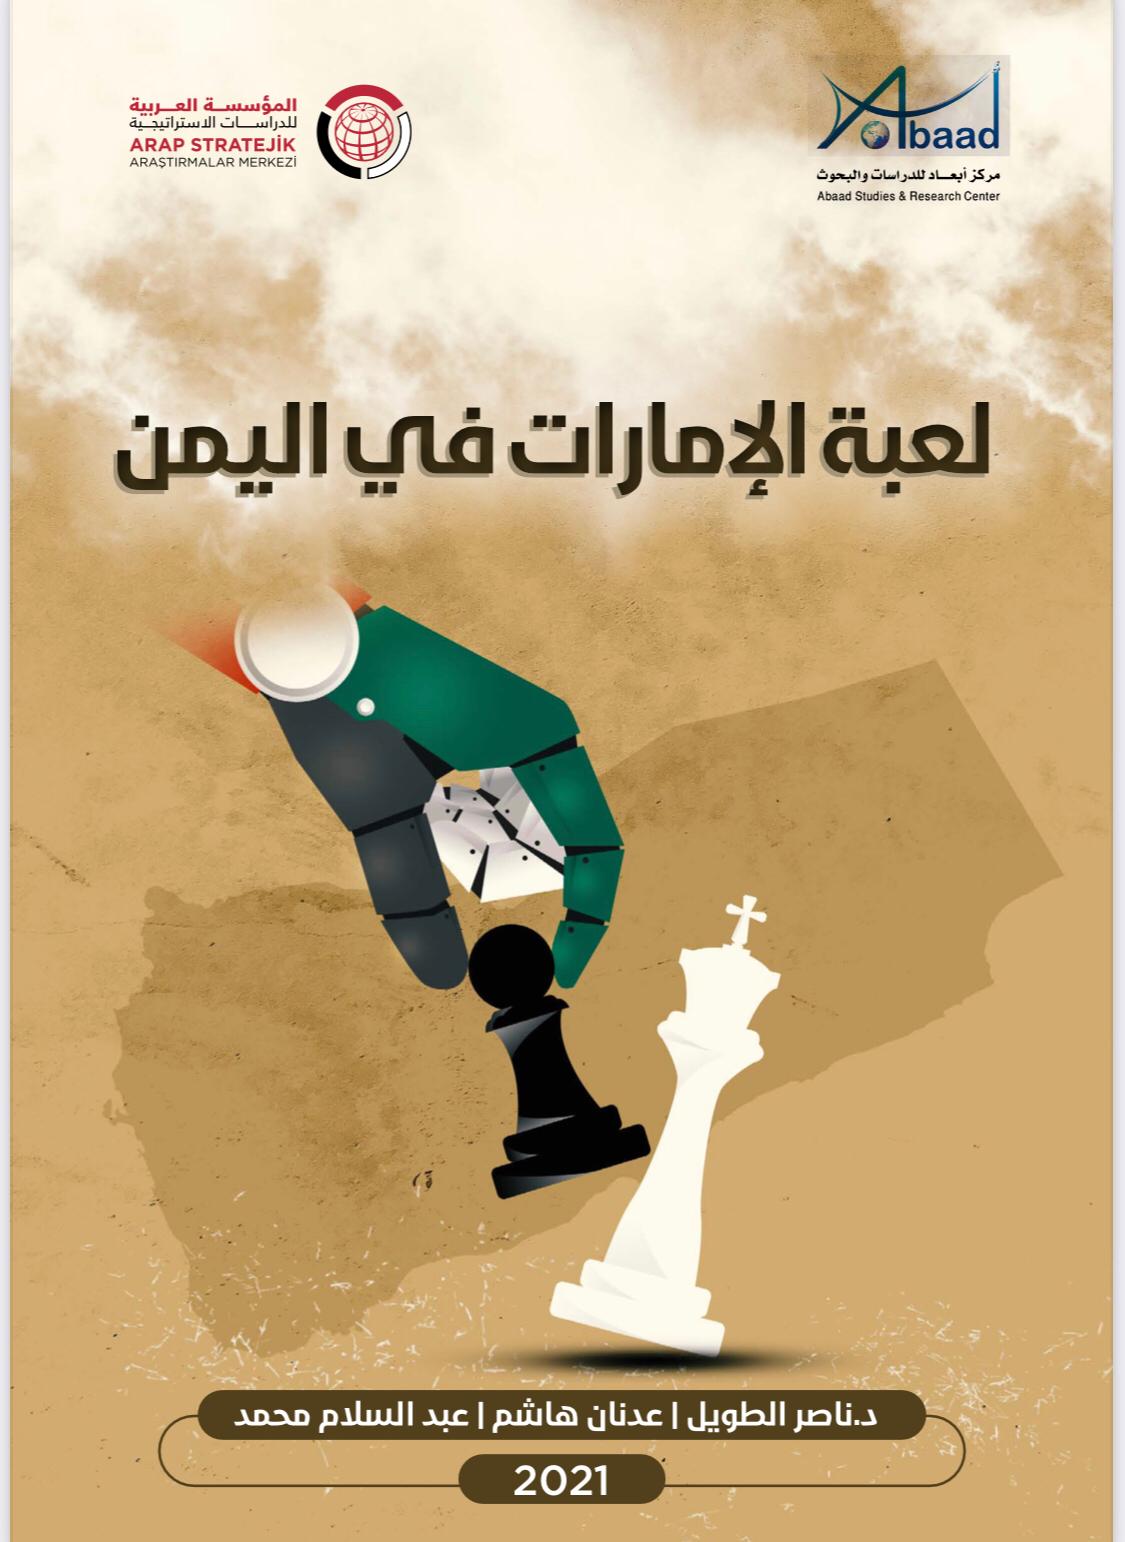  لعبة الامارات في اليمن